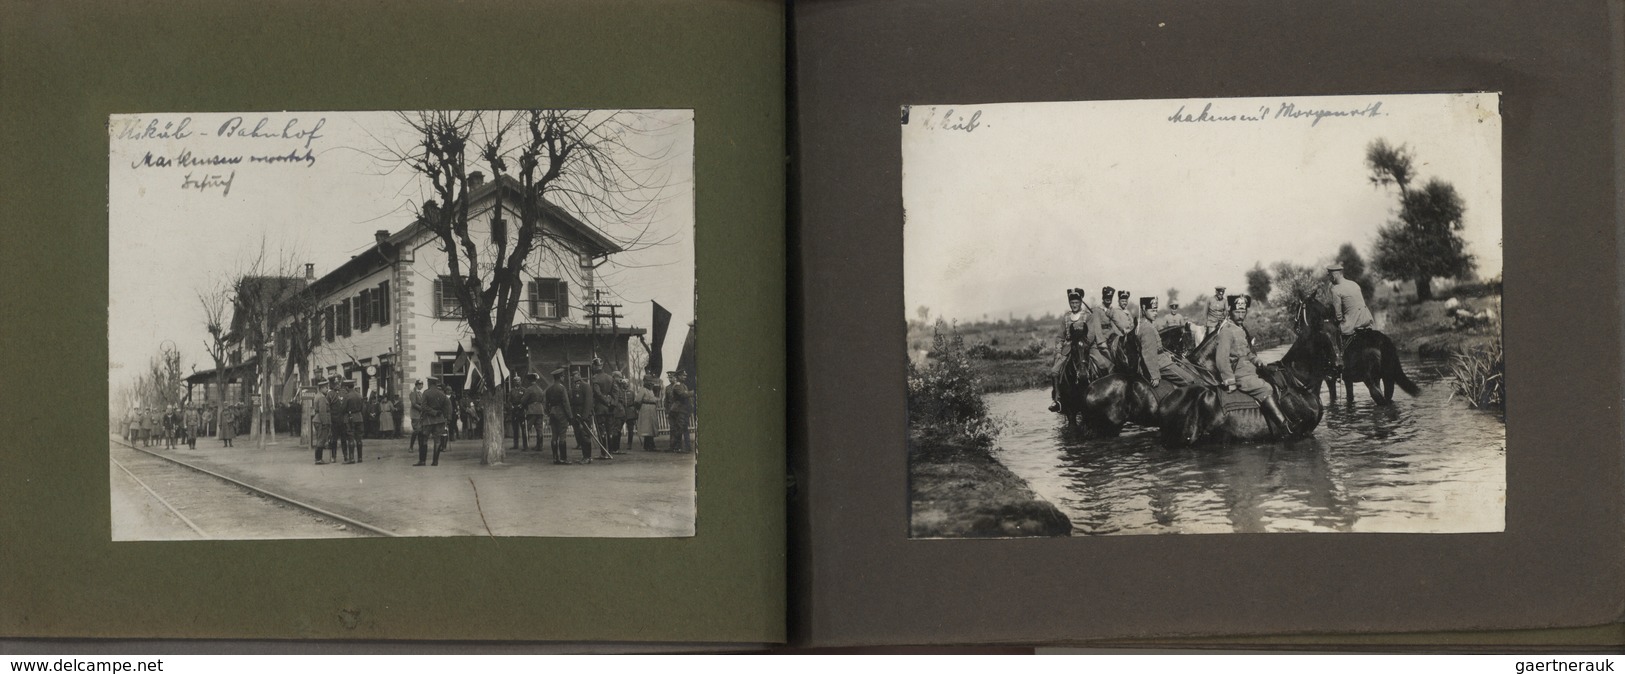 Türkei - Besonderheiten: 1914/1918: Fotoalbum eines Luftschiffers im 1. Weltkrieg mit 78 Fotos und A